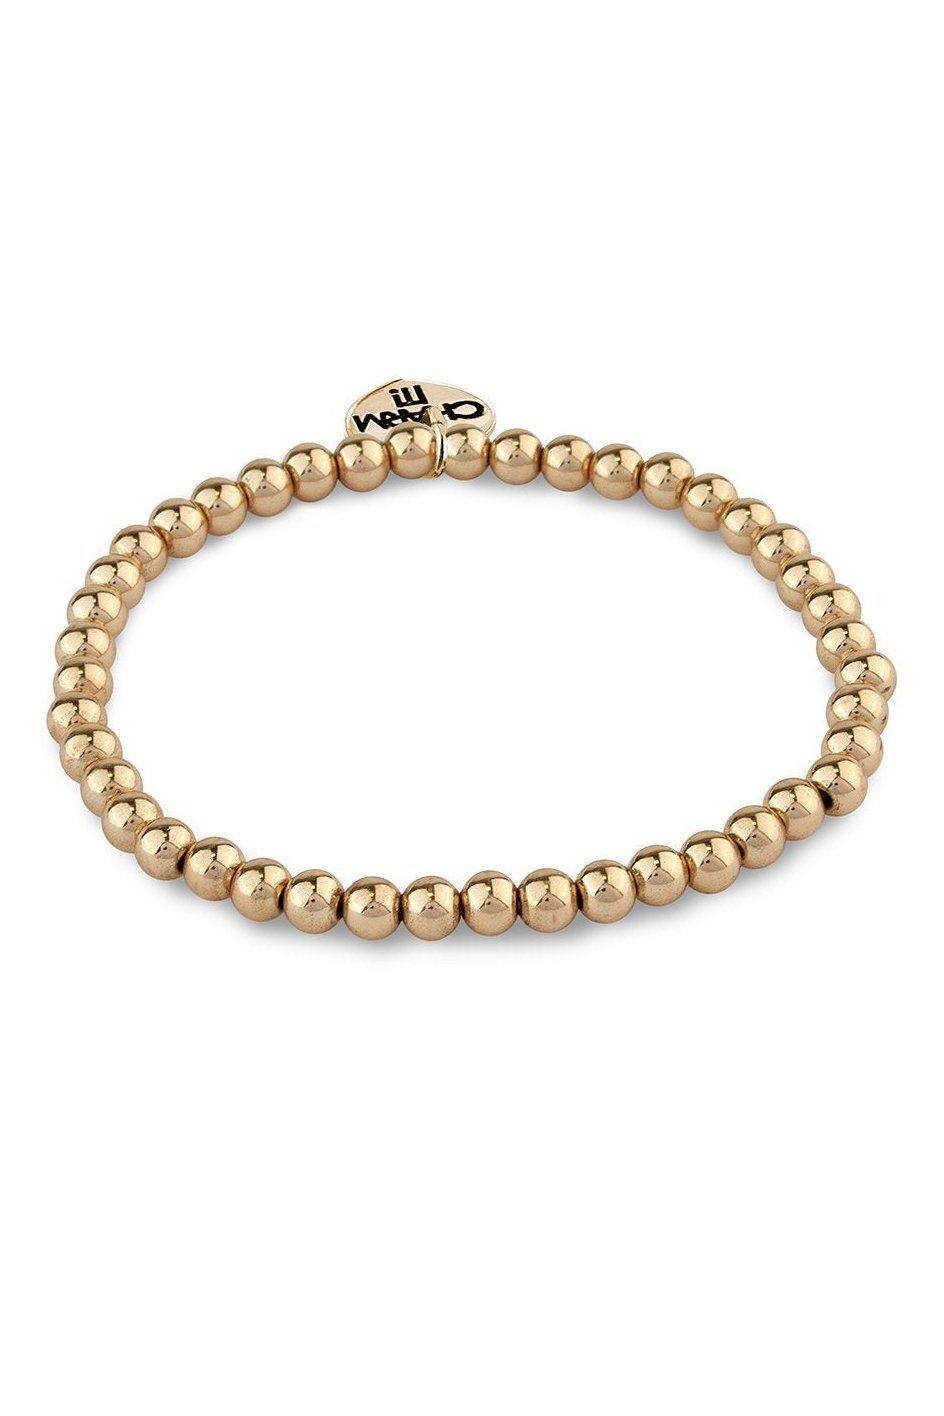 Gold Bead Charm Bracelet - Tea for Three: A Children's Boutique-New Arrivals-TheT43Shop